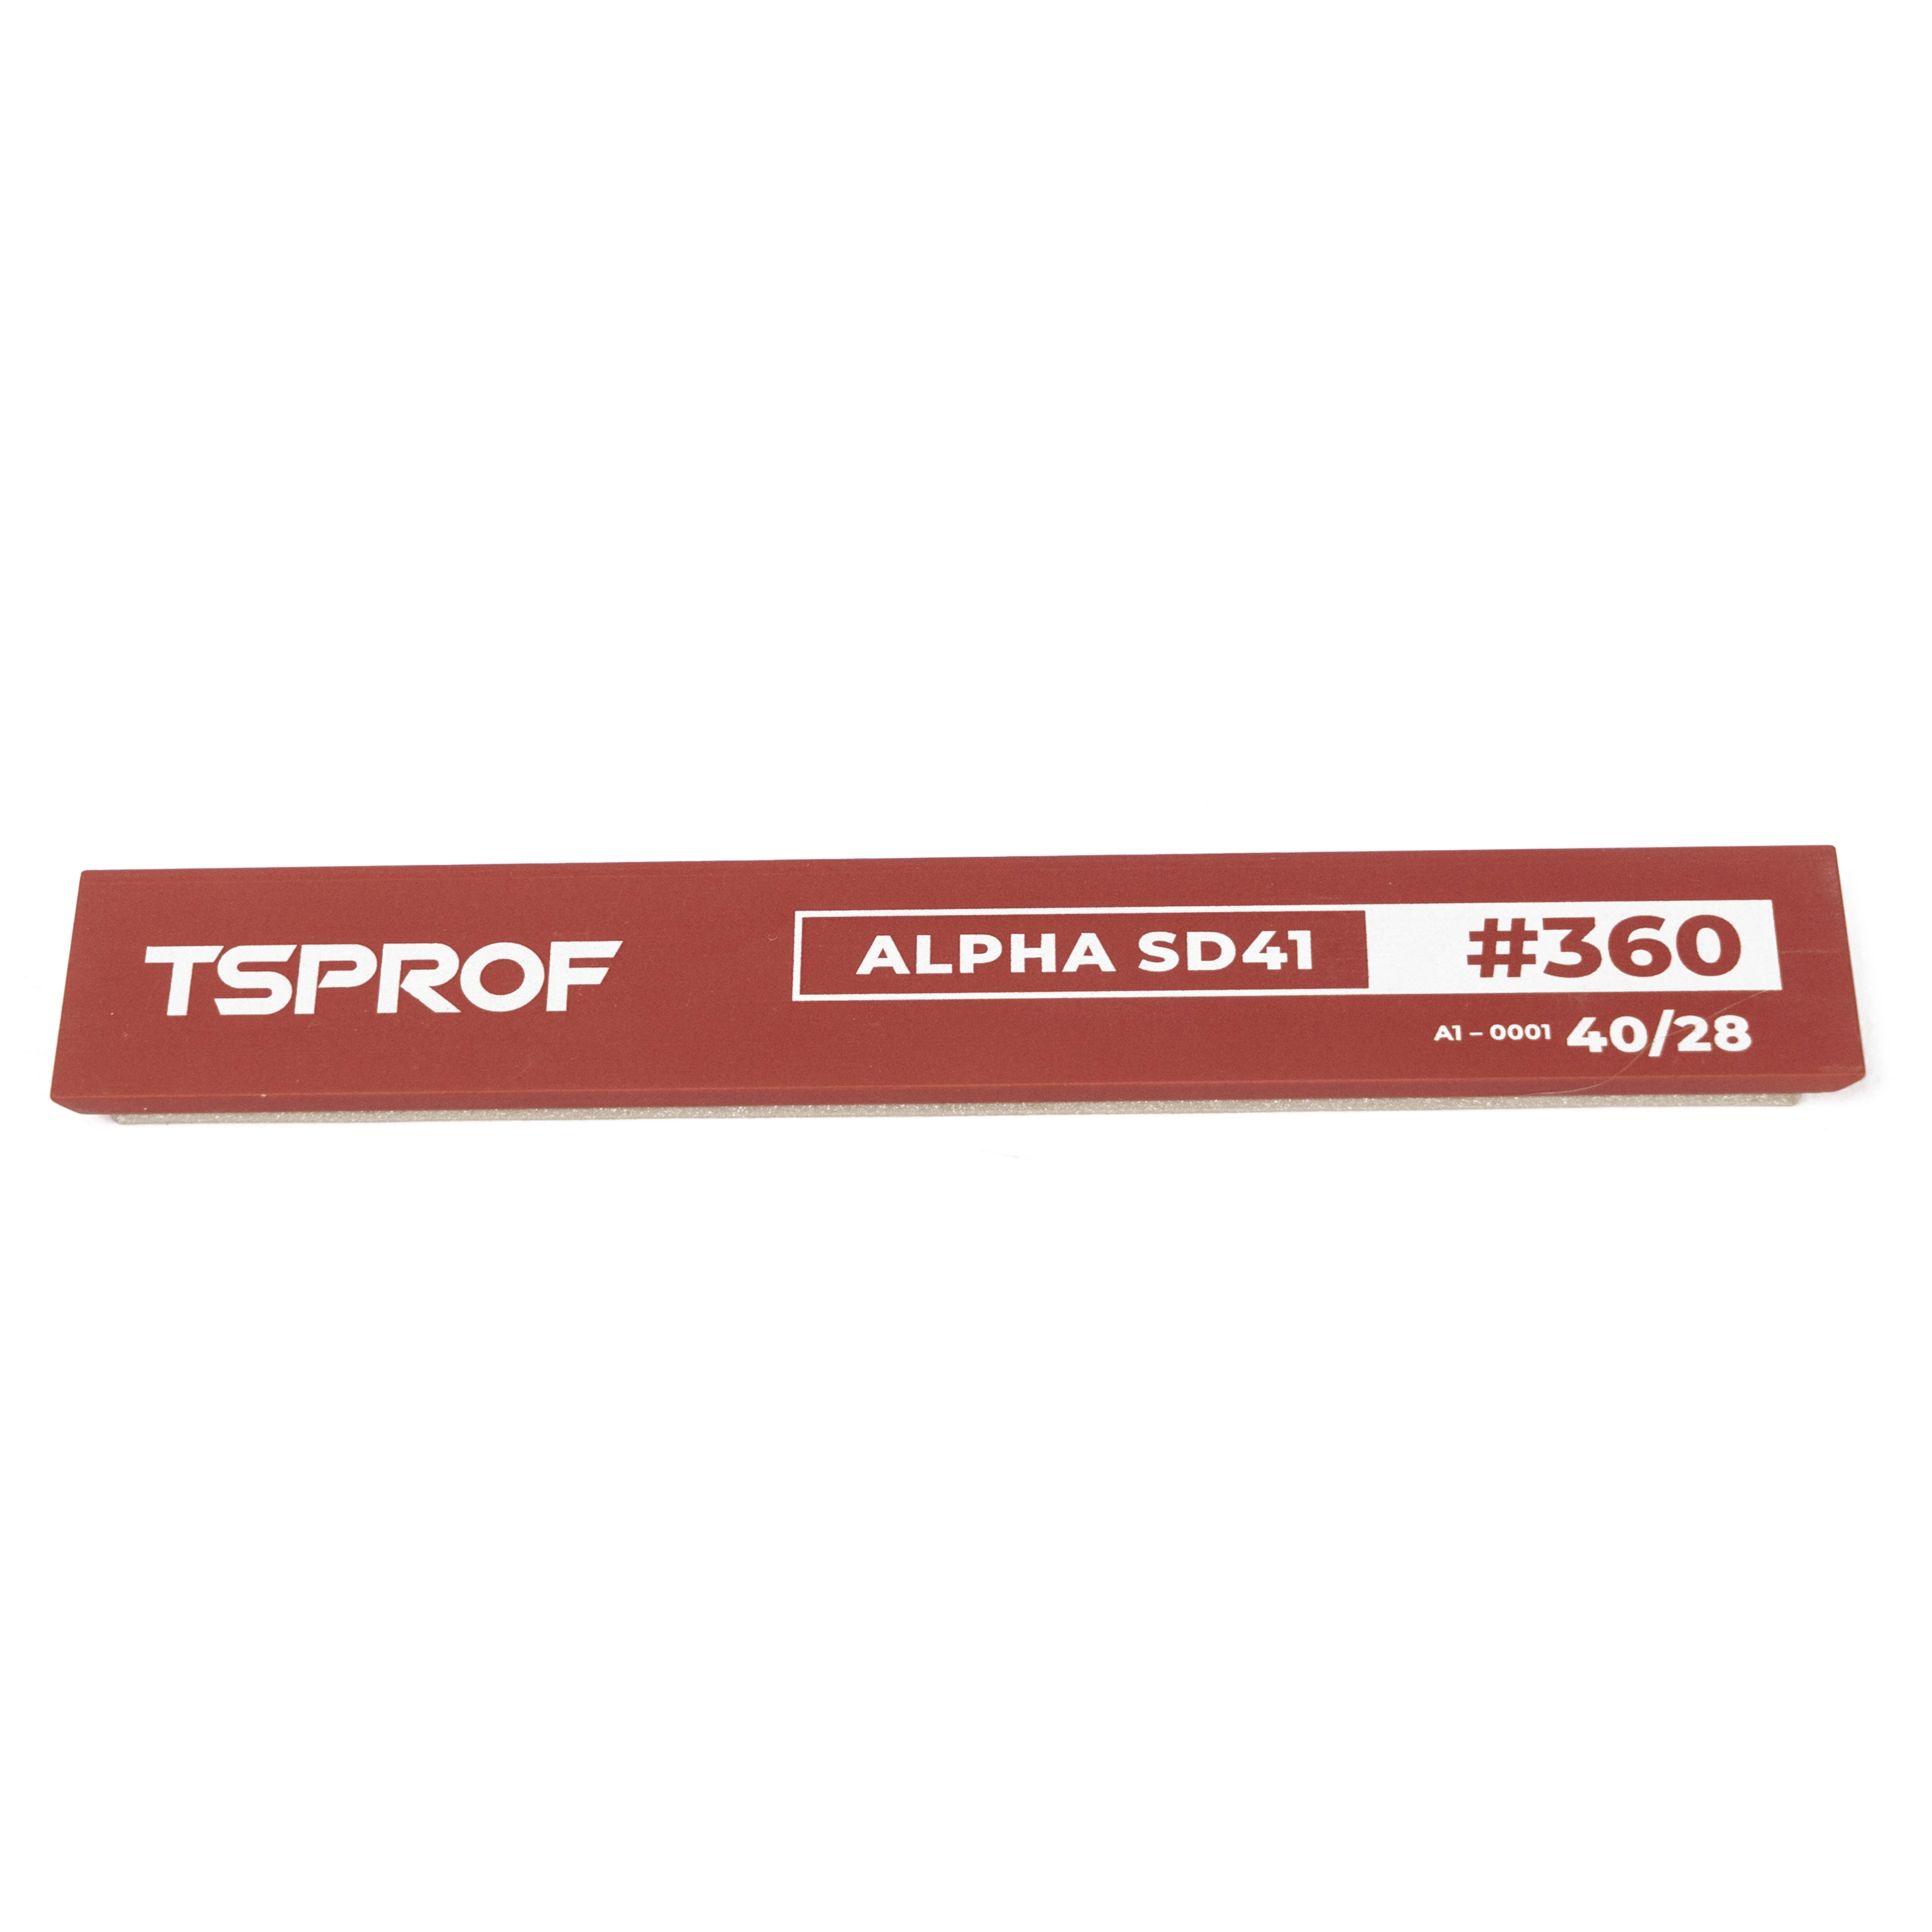 фото Алмазный брусок для заточки TSPROF Alpha SD41, 40/28 (360 грит) на ytprof.ru